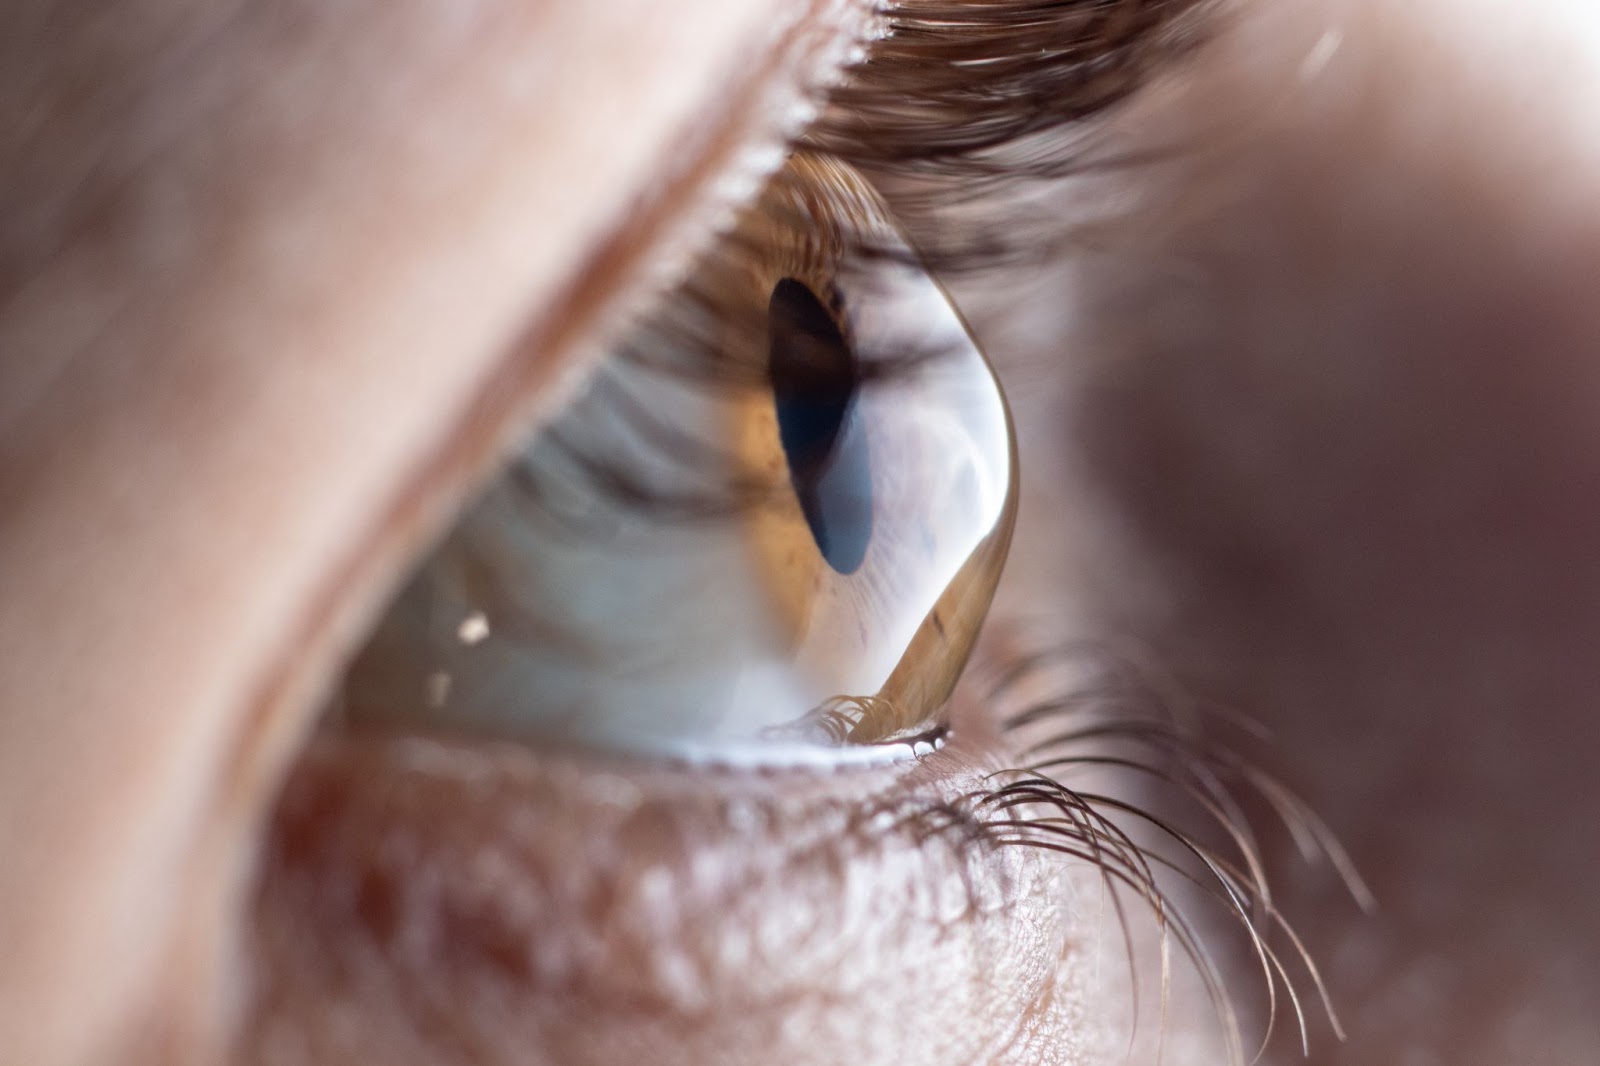 Ce este astigmatismul și cum îl putem corecta? - Blog de optică medicală |  Lensa.ro